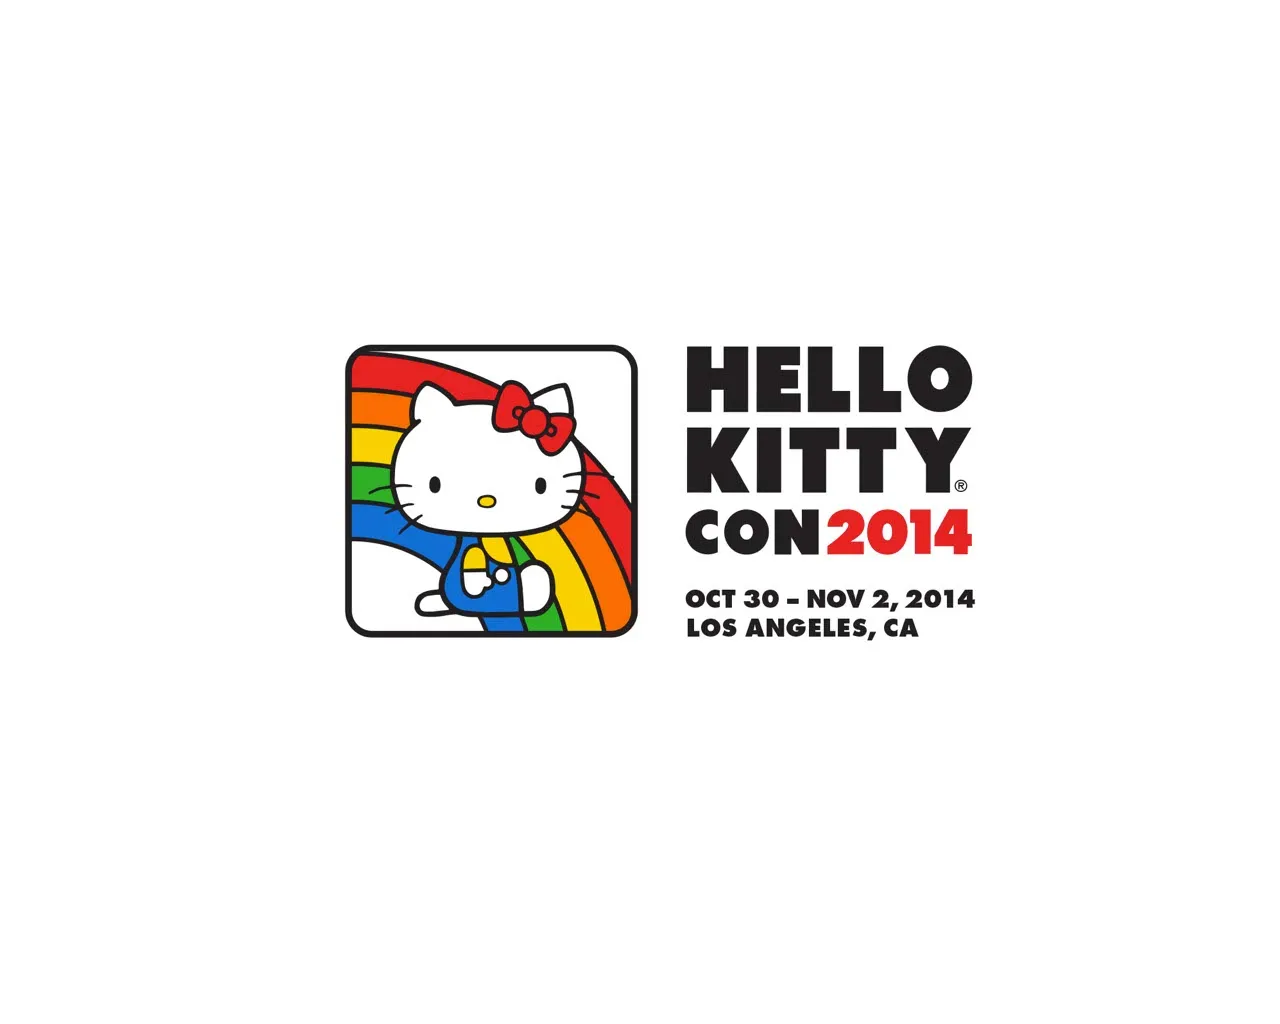 Hello Kitty tendrá su primer convención y será en Los Angeles